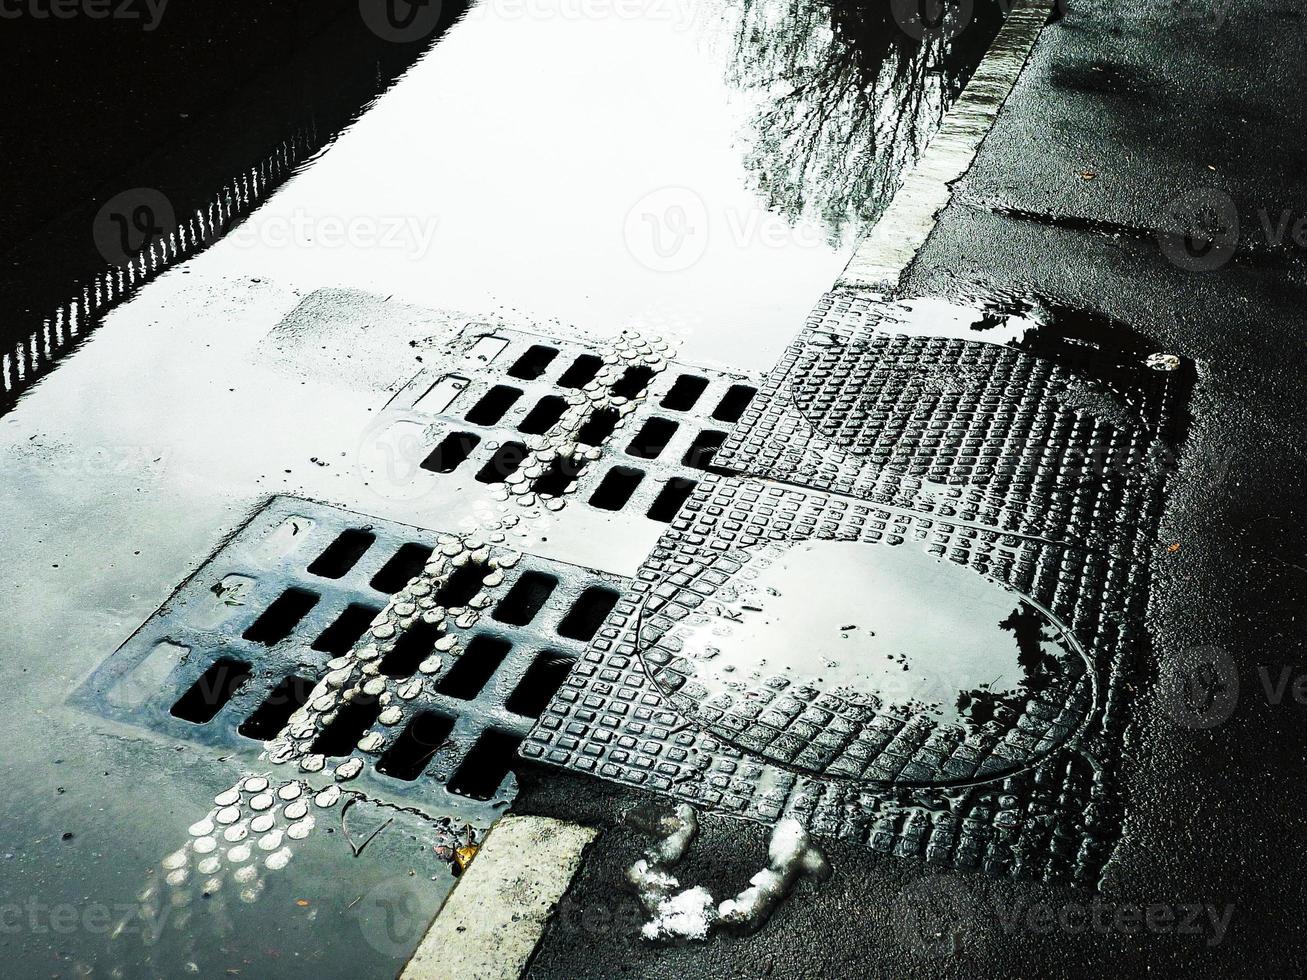 água fluindo para o bueiro de esgoto. estrada molhada com escotilhas de esgoto. foto